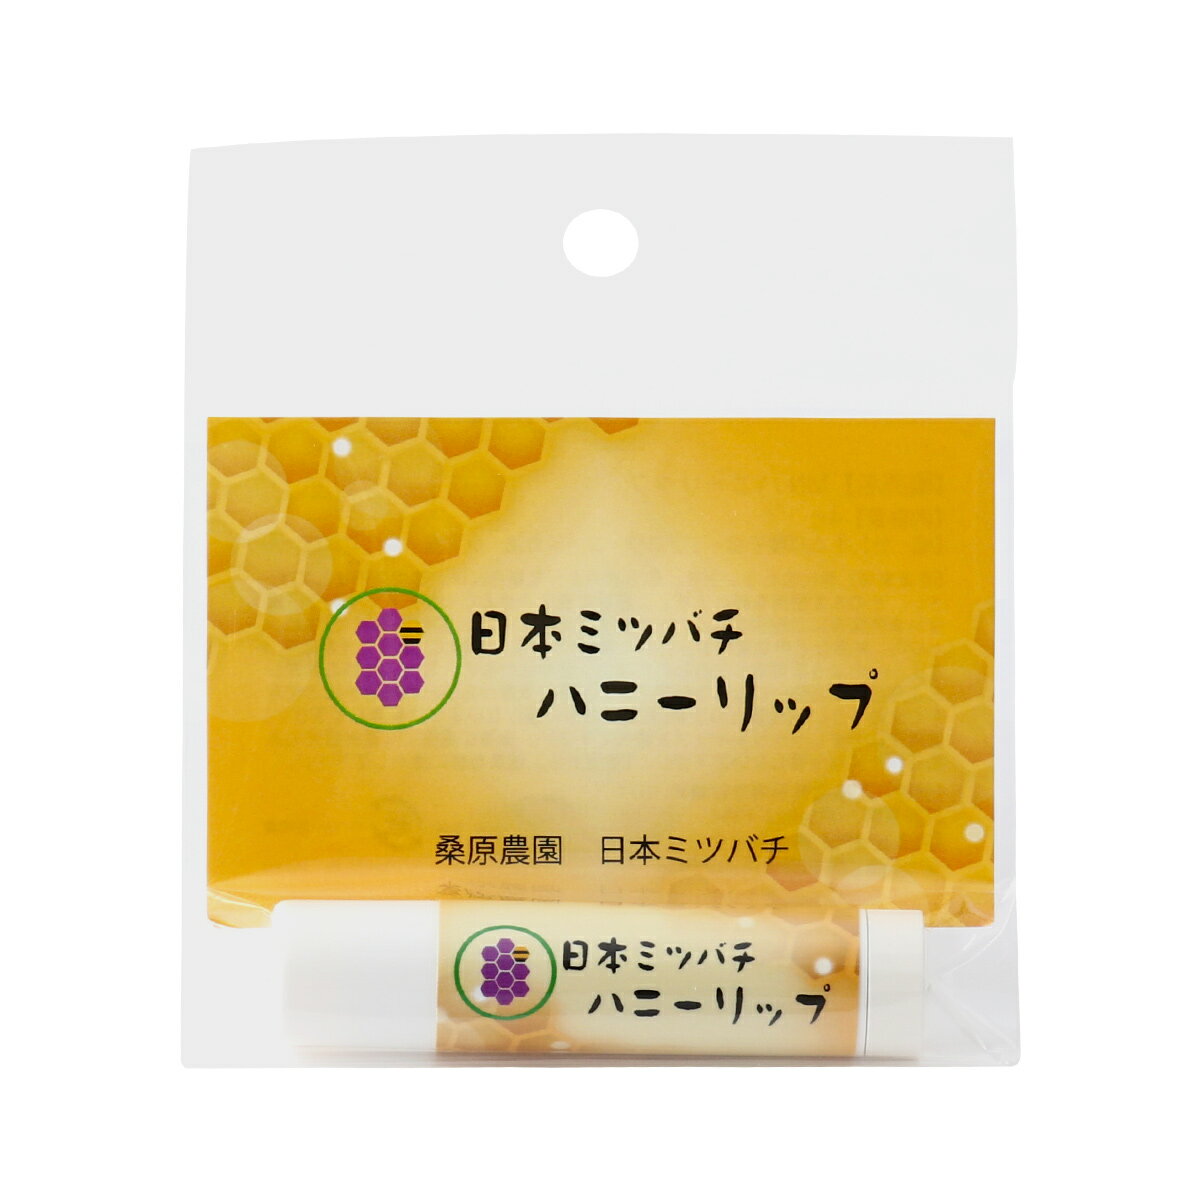 【桑原農園】日本ミツバチ ハニーリップ 4g